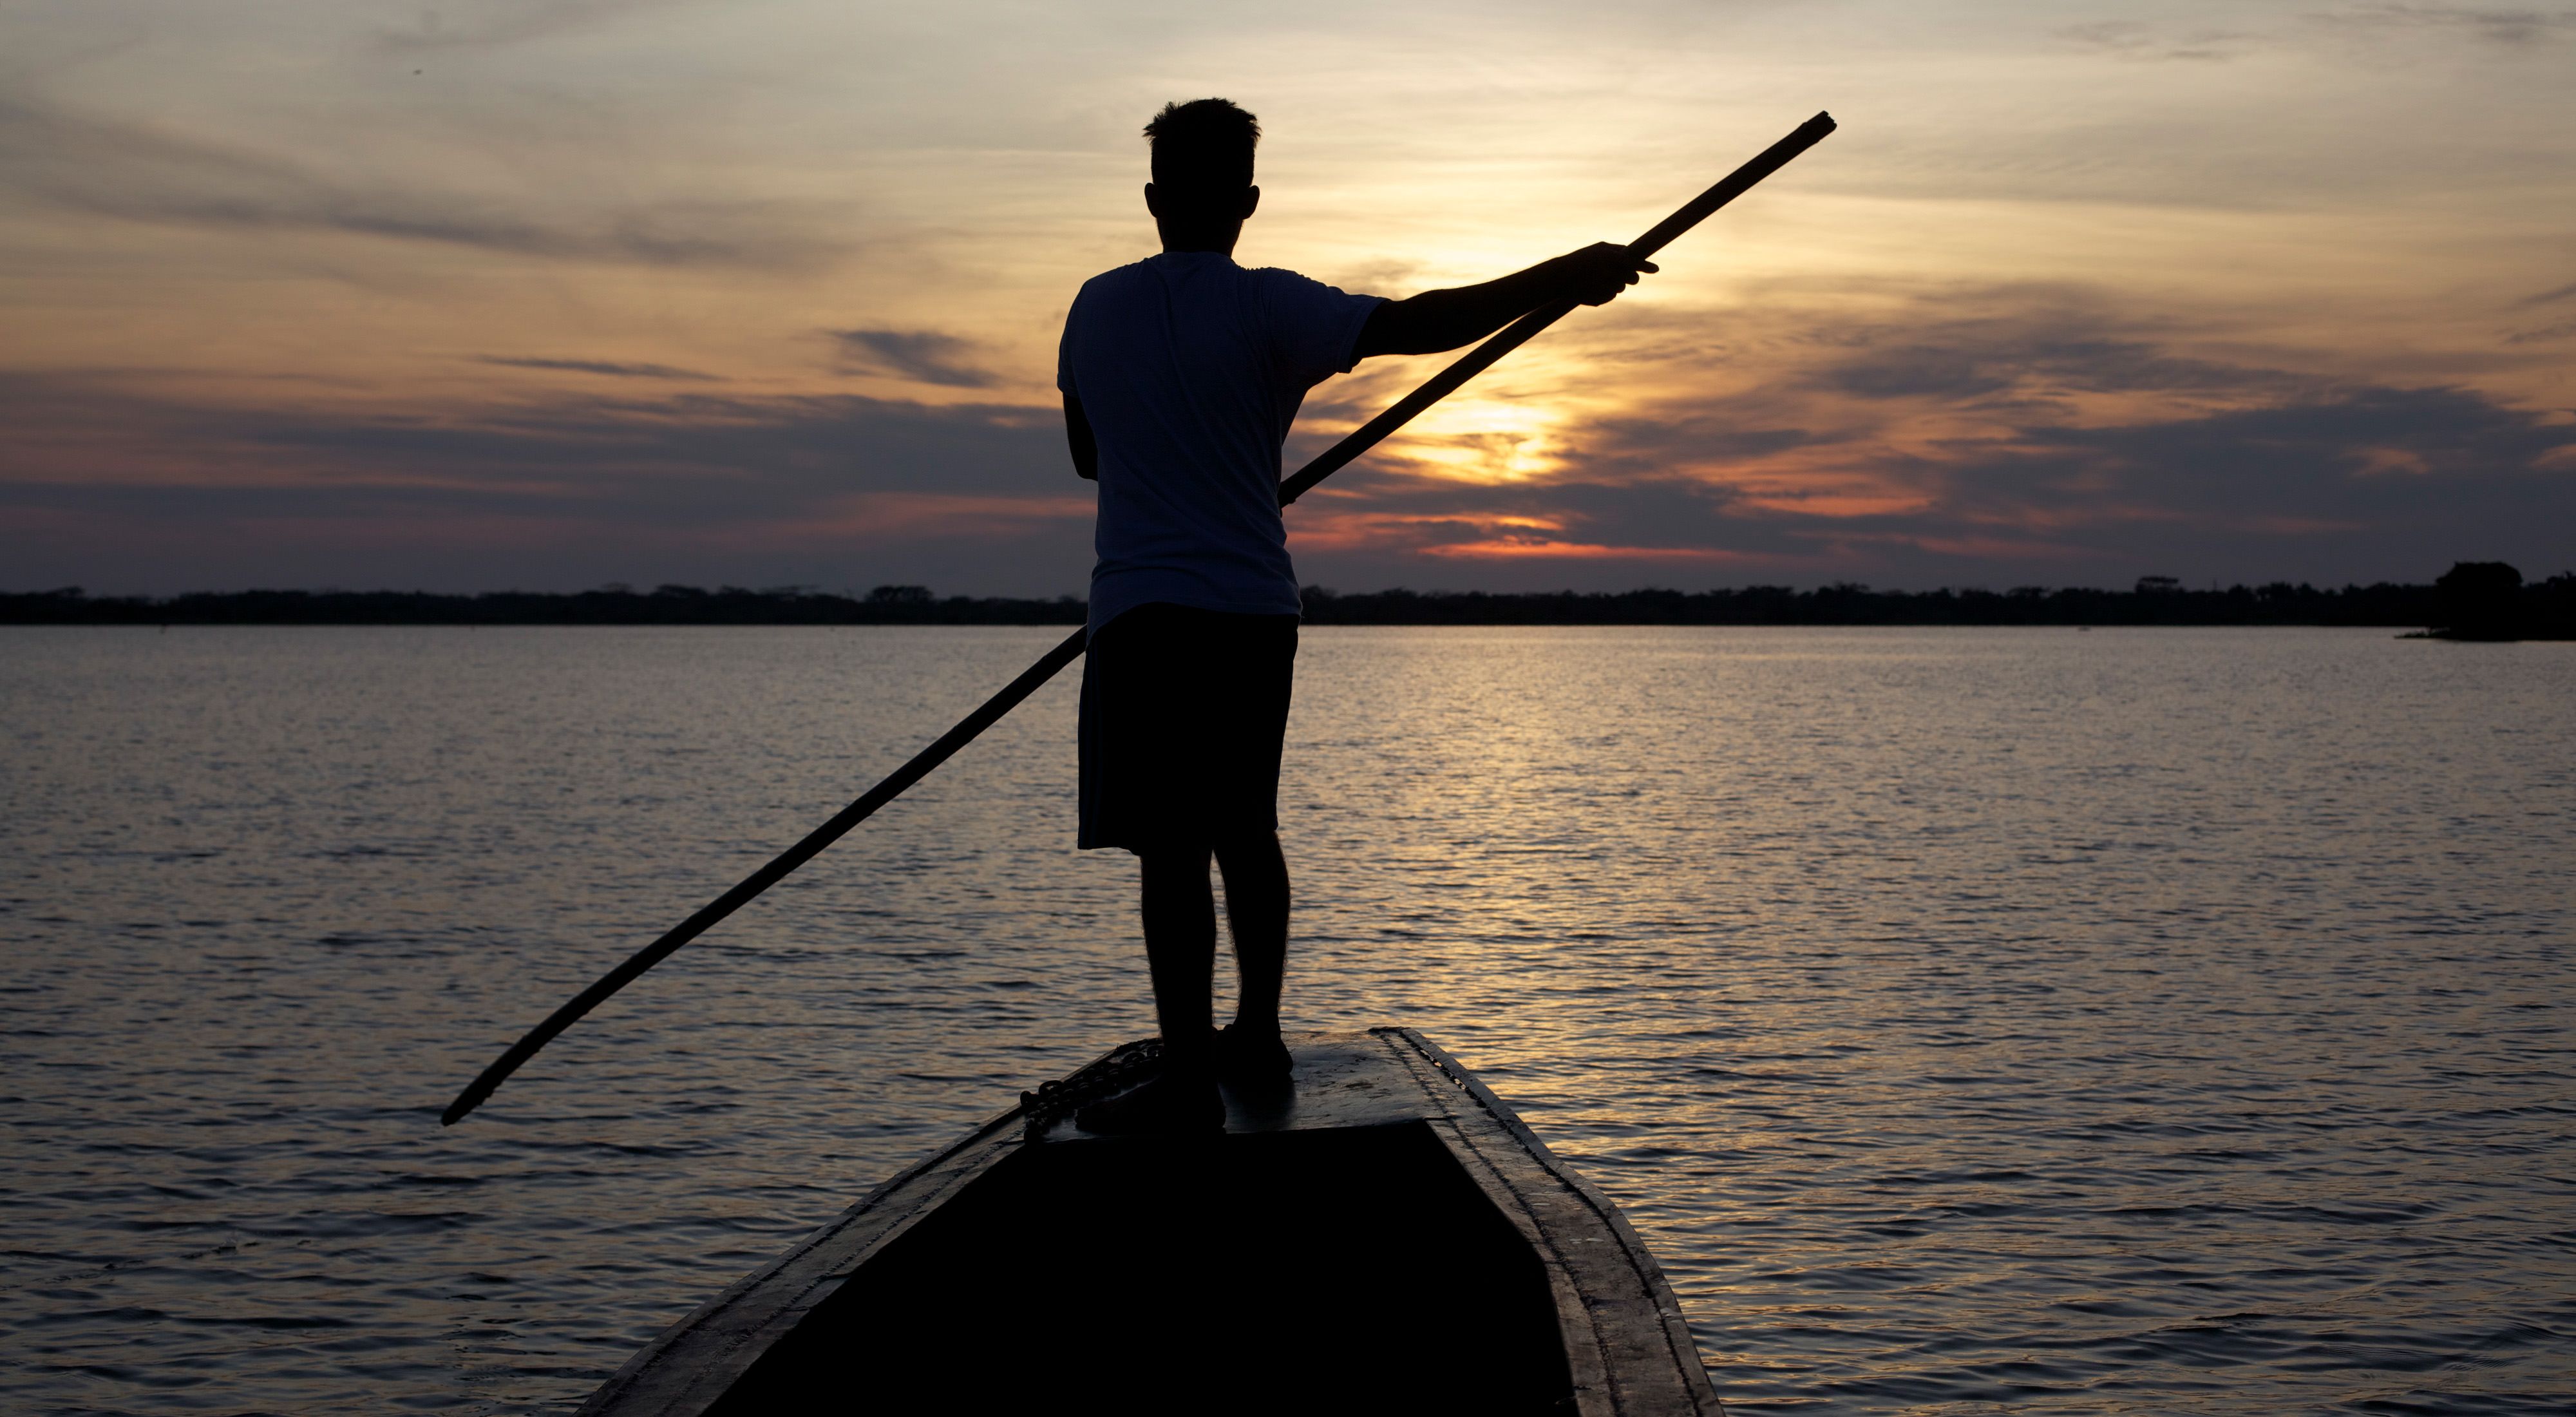 Fisherman in the Magdalena River